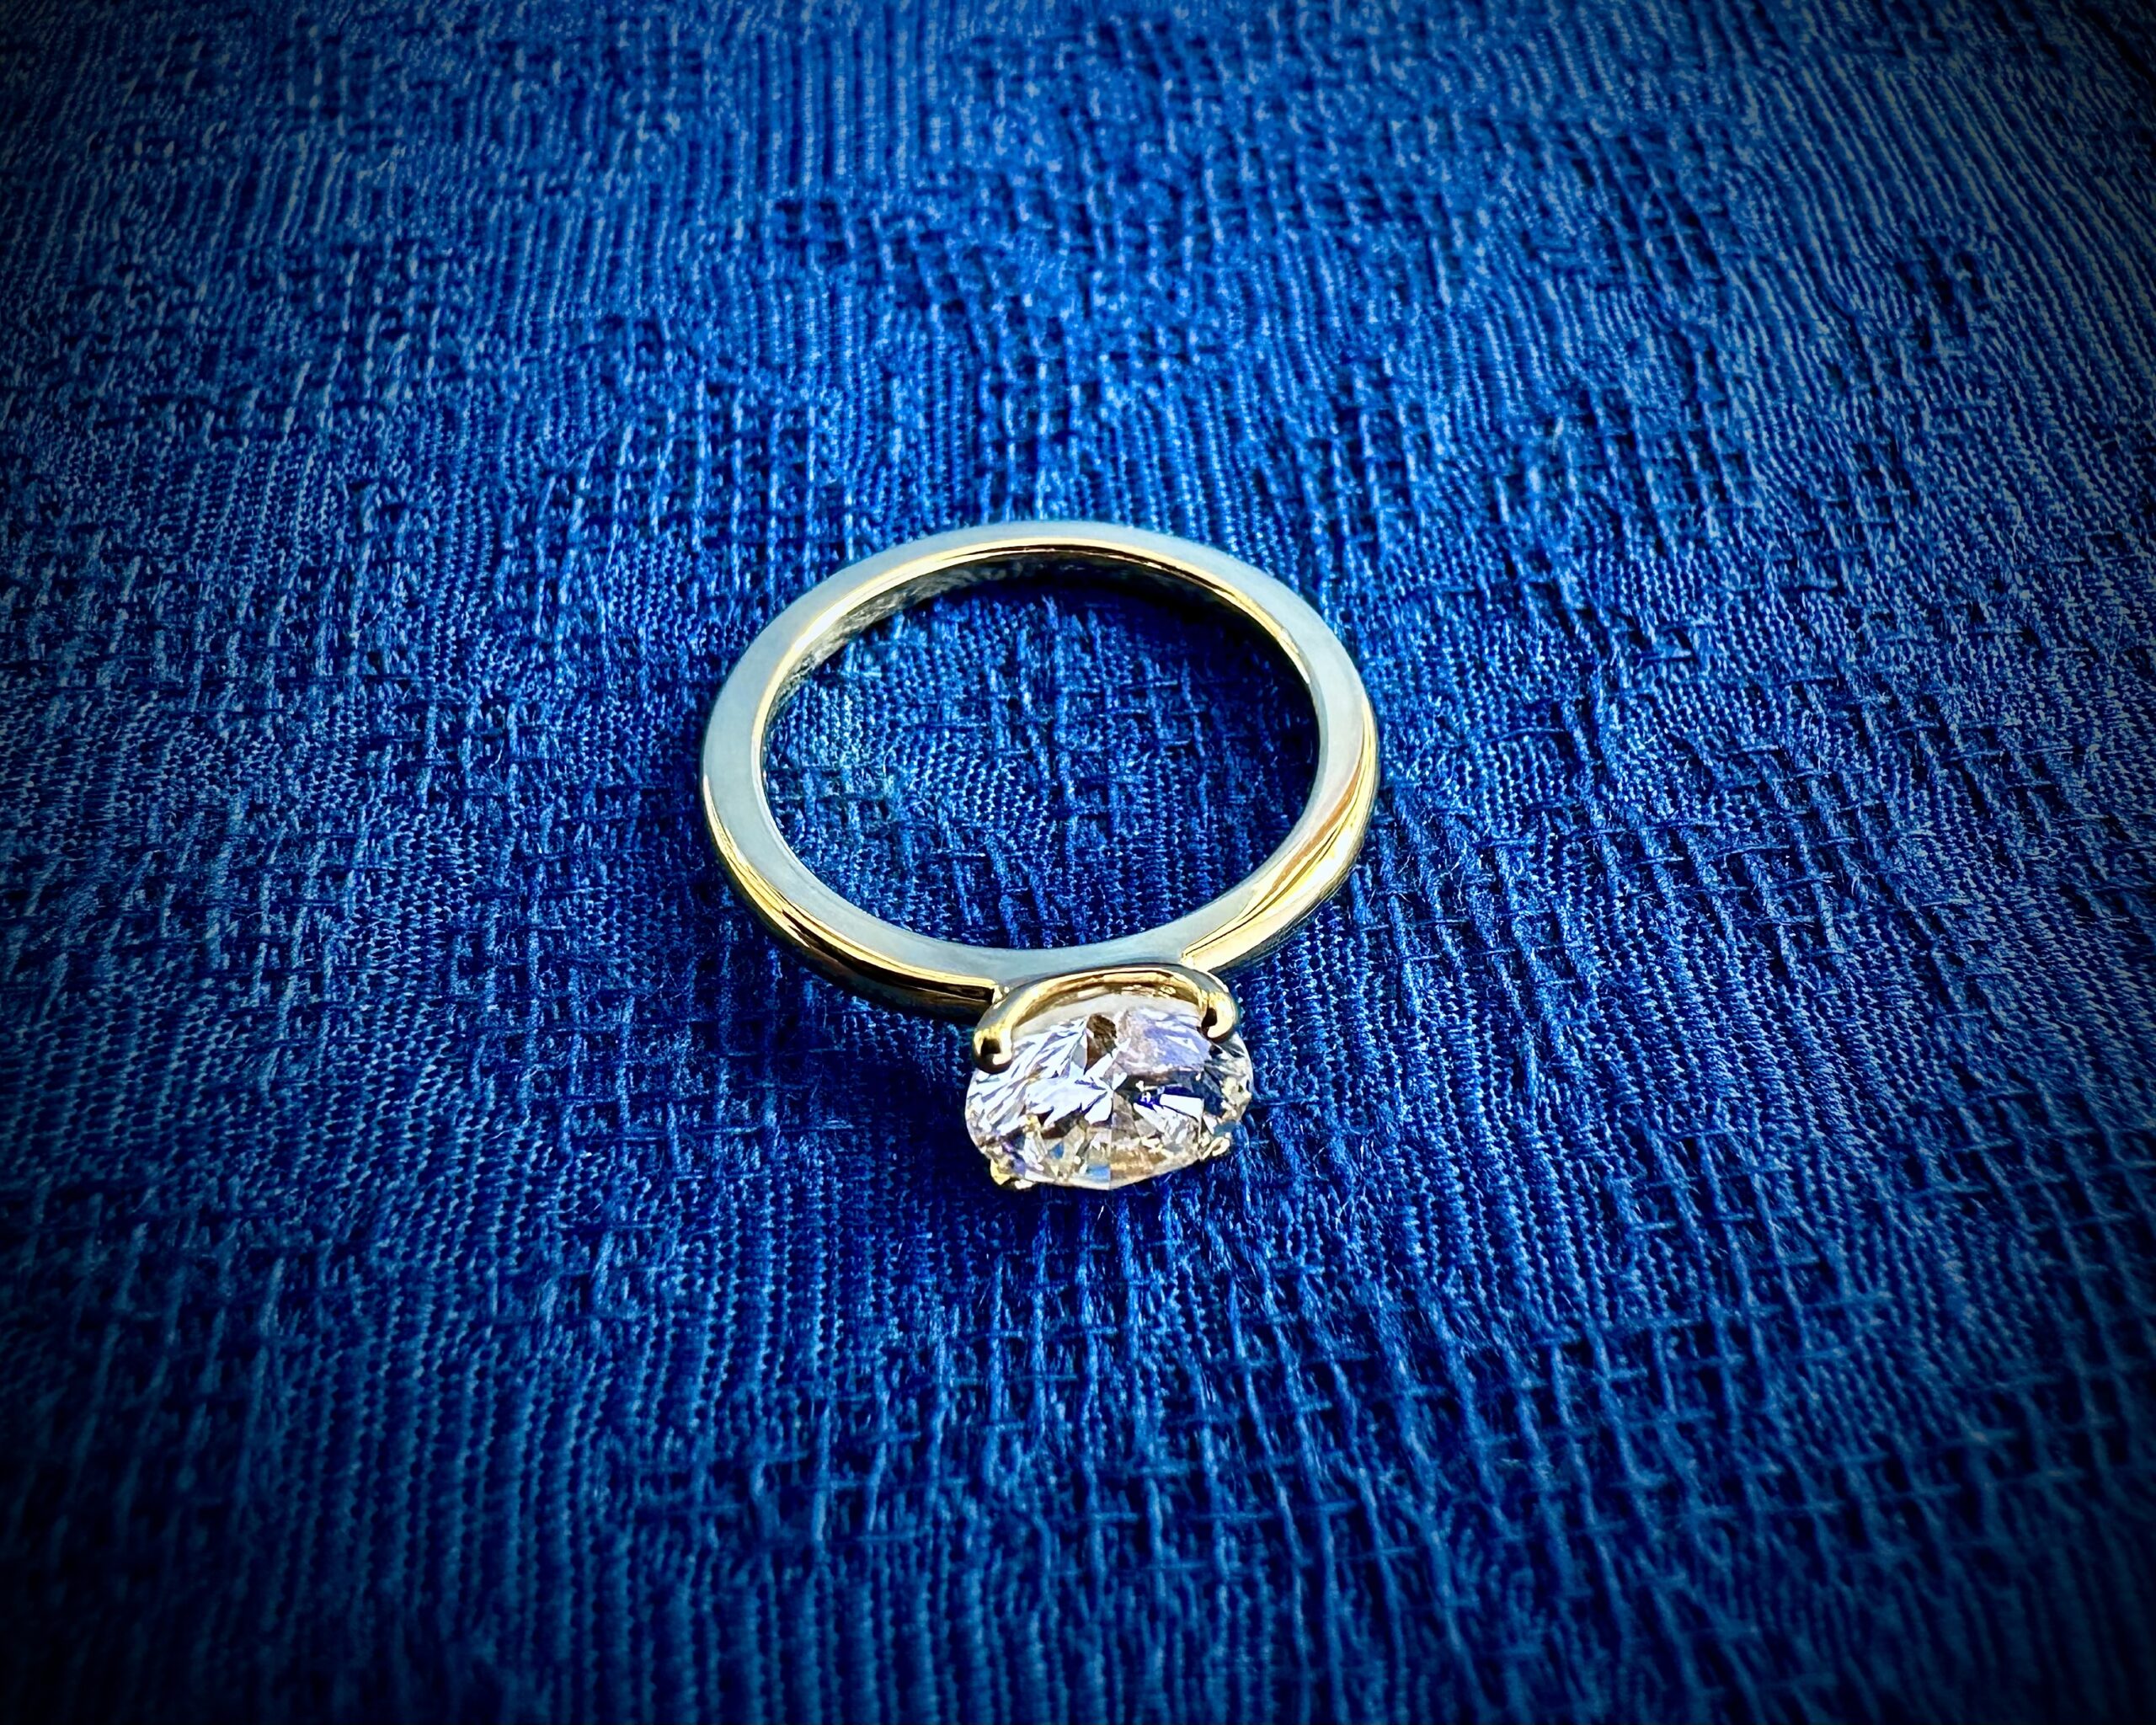 今日もコツコツ彫金作業お婆様が所有していたダイヤモンドの指輪を お孫さんの婚約指輪に使い代々受け継いでいく まさに欧米のジュエリー文化です 宝石を受け継ぎデザインを変え世代にあった指輪に変える 全ての宝石にはストーリーがあり歴史を受け継ぎます material K18YG　　Diamond 1.05ct この指輪は４本爪で石の高さを最小限に抑え 完全に結婚指輪やファッションリングと重ねつけできる設計 色彩や組み合わせをお楽しみください 何気ないデザインの中にも機能や装着性、強度のバランスを展開しています PS Blue Dove Jewelry Studioは、世界的に活躍するジュエリーアーティスト山田直広のジュエリー工房にショップを併設しています。日本の量産品を取り扱うジュエリーショップと同じ価格帯でオーダージュエリーをお仕立ていたします。お気軽にお越しください。もちろん代々受け継がれた指輪などございましたらリフォームも承ります。モダンでサステナブルなジュエリー文化をお楽しみください。アーティストが直接ご相談をお受けいたします。 コンテンポラリージュエリーアーティスト 山田直広